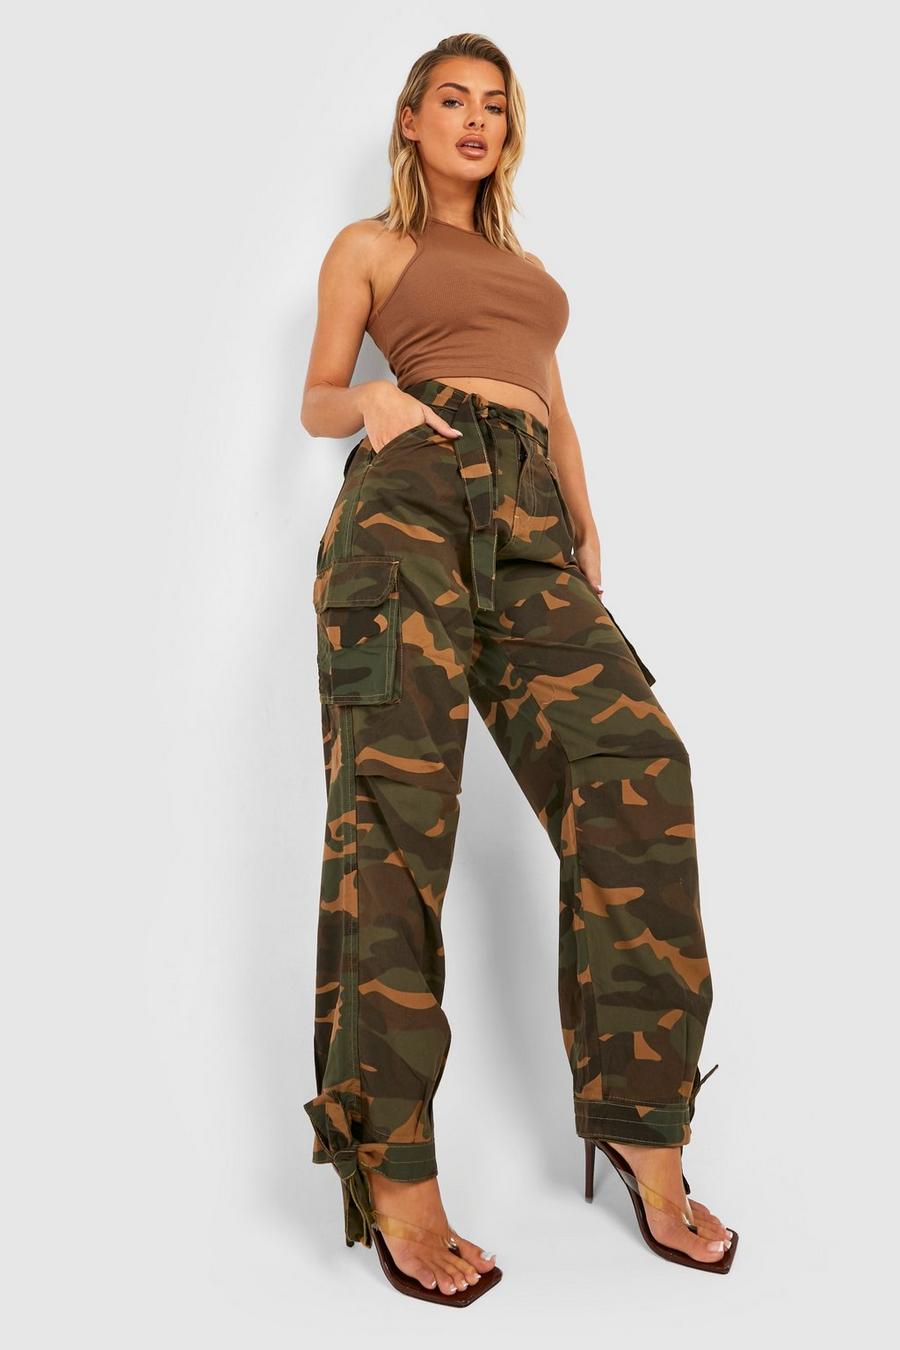 Pantaloni Cargo extra comodi in fantasia militare scura con cintura e laccetti sul fondo, Khaki caqui